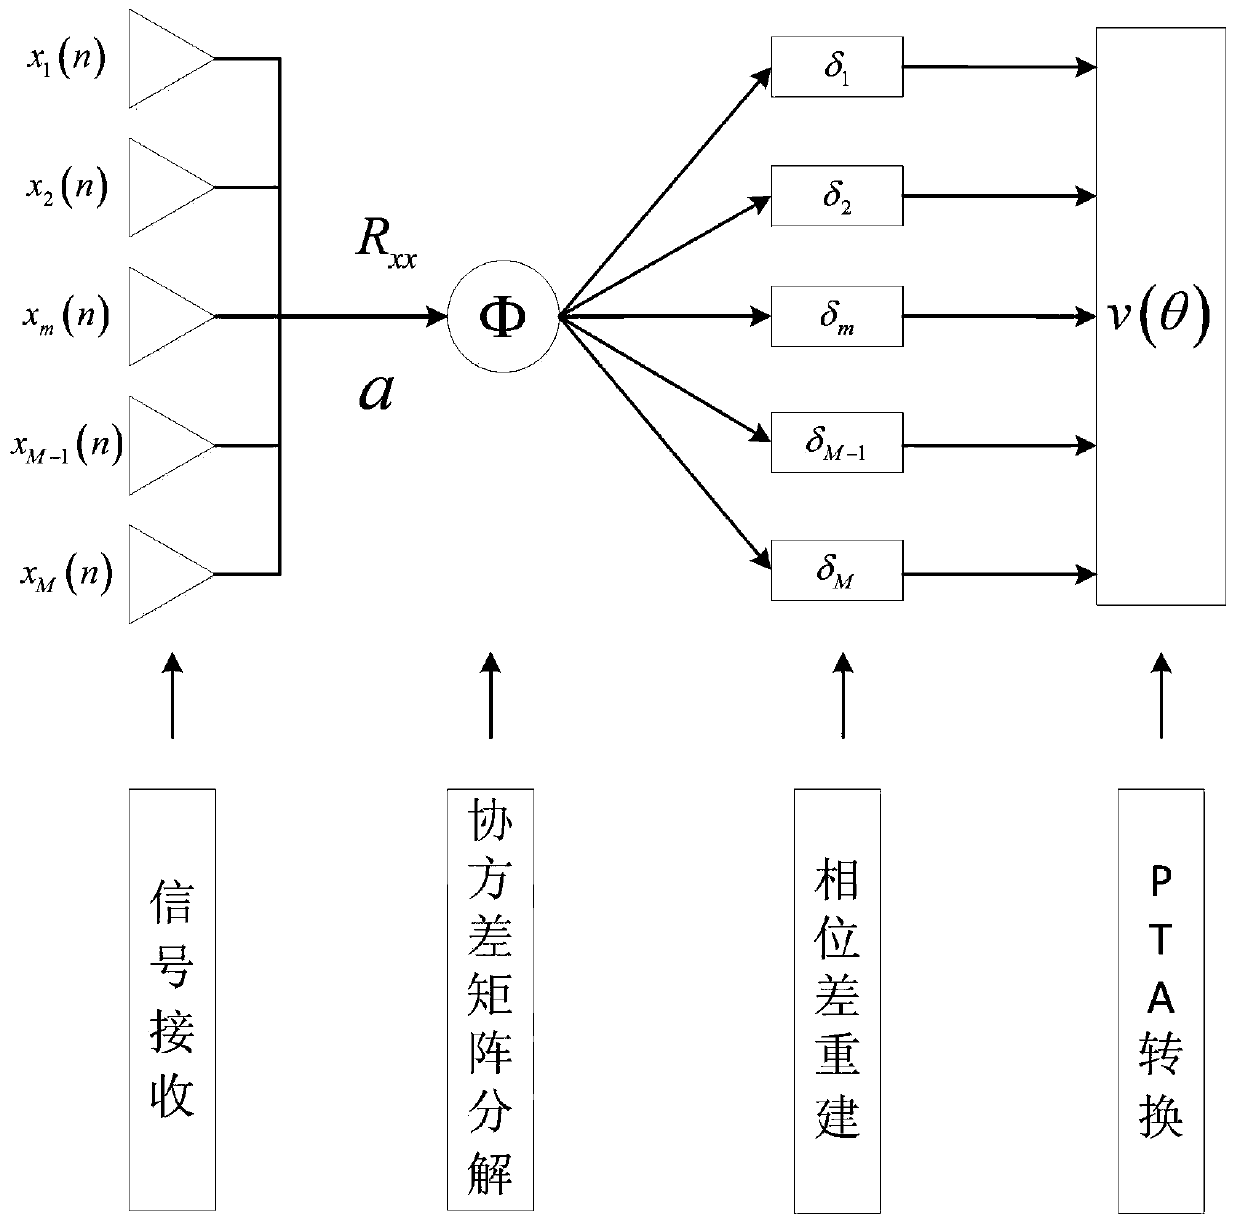 DOA estimation method based on MVDR covariance matrix element adaptive phase angle conversion